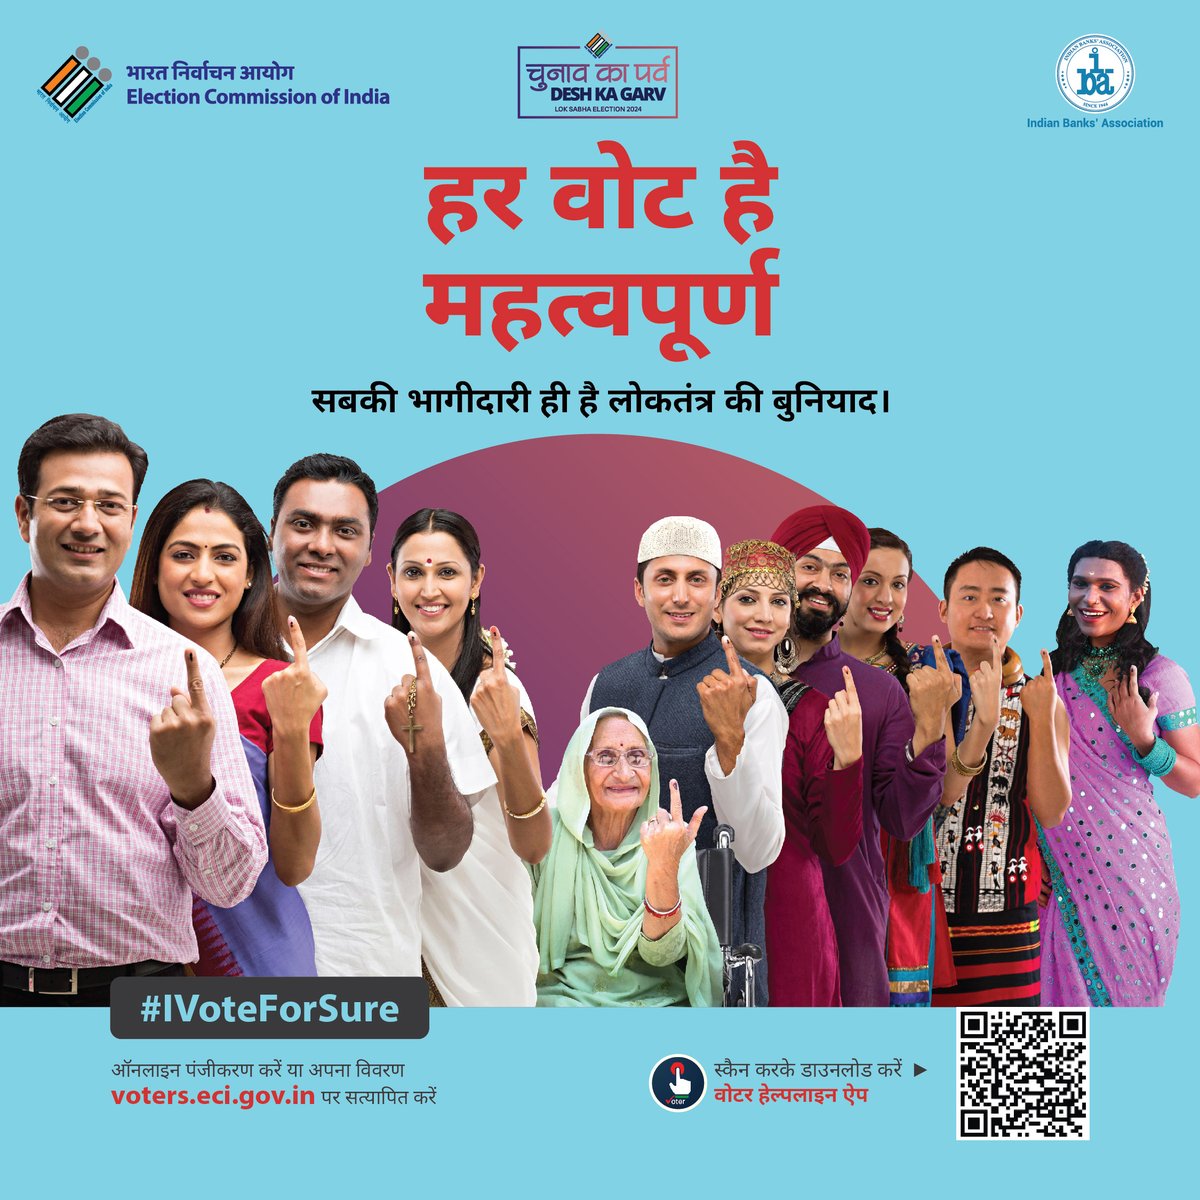 अपने उम्मीदवार के बारे में जानें और वोटिंग के अधिकार का इस्तेमाल करें।

@ECISVEEP @DFS_India 

#IVoteForSure #UnionBankOfIndia #GoodPeopleToBankWith